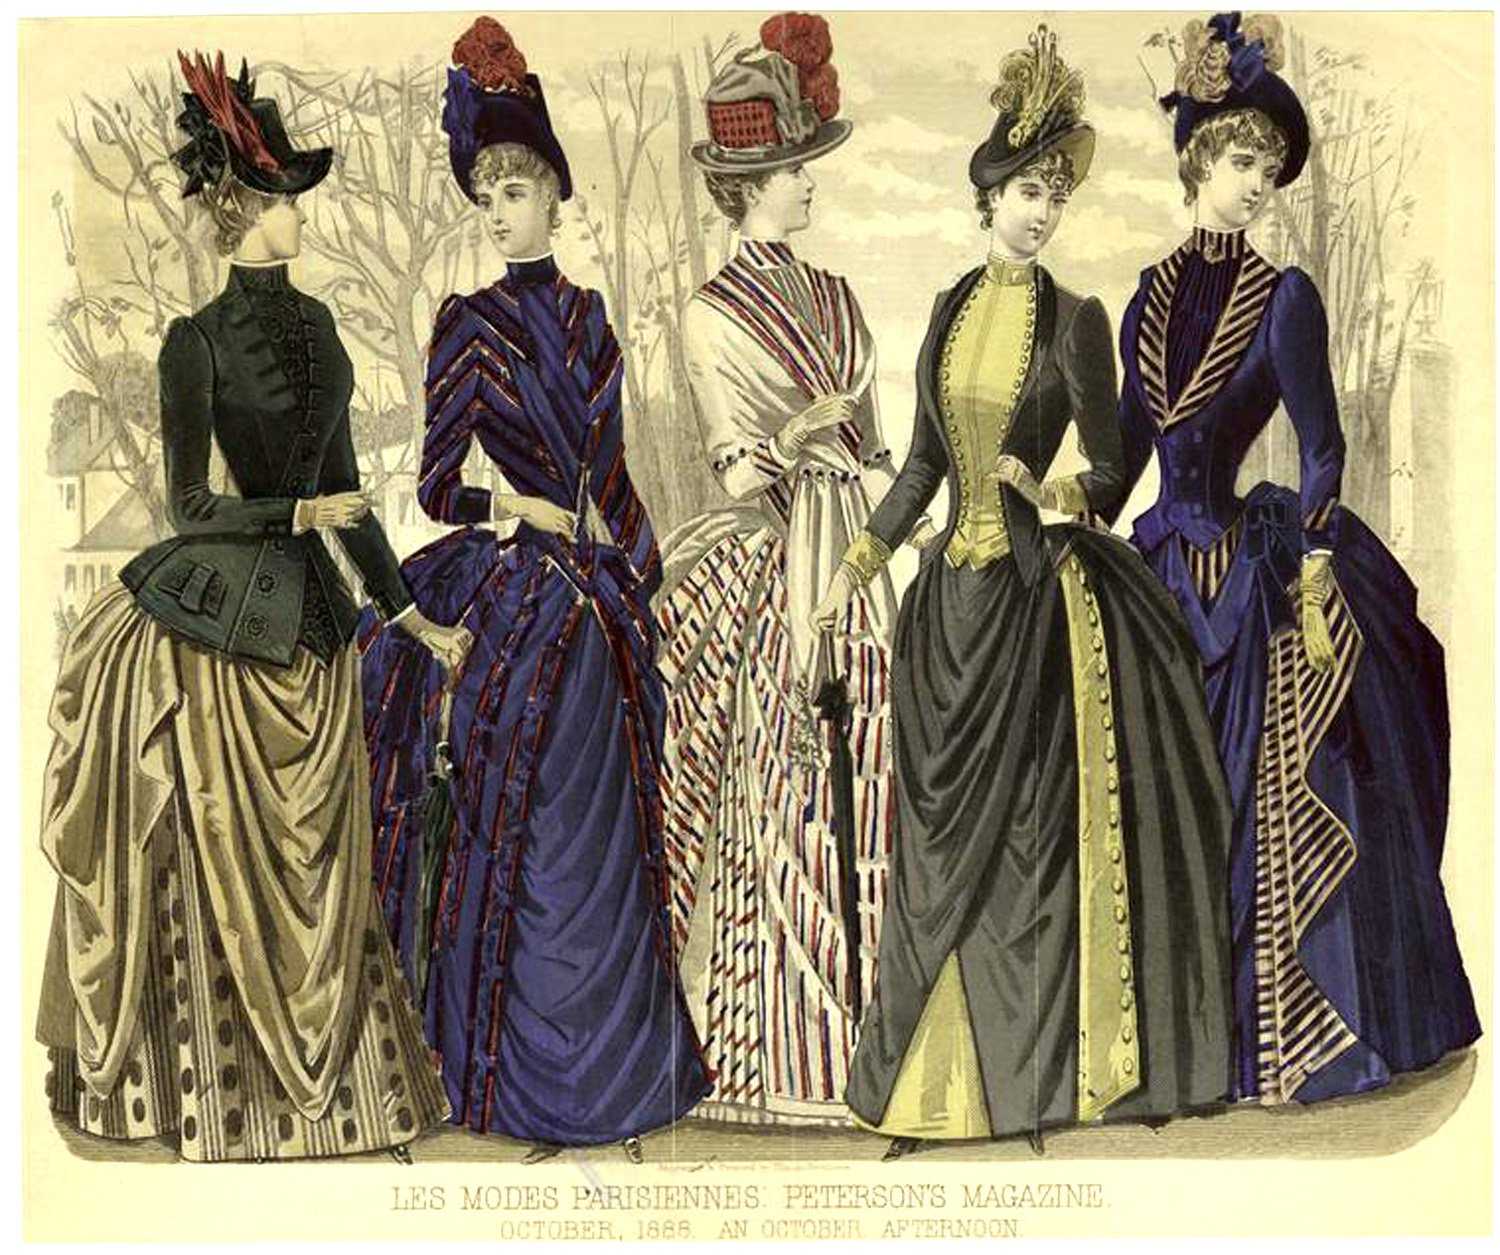 Одежда 19 века: женская и мужская - фото и описание